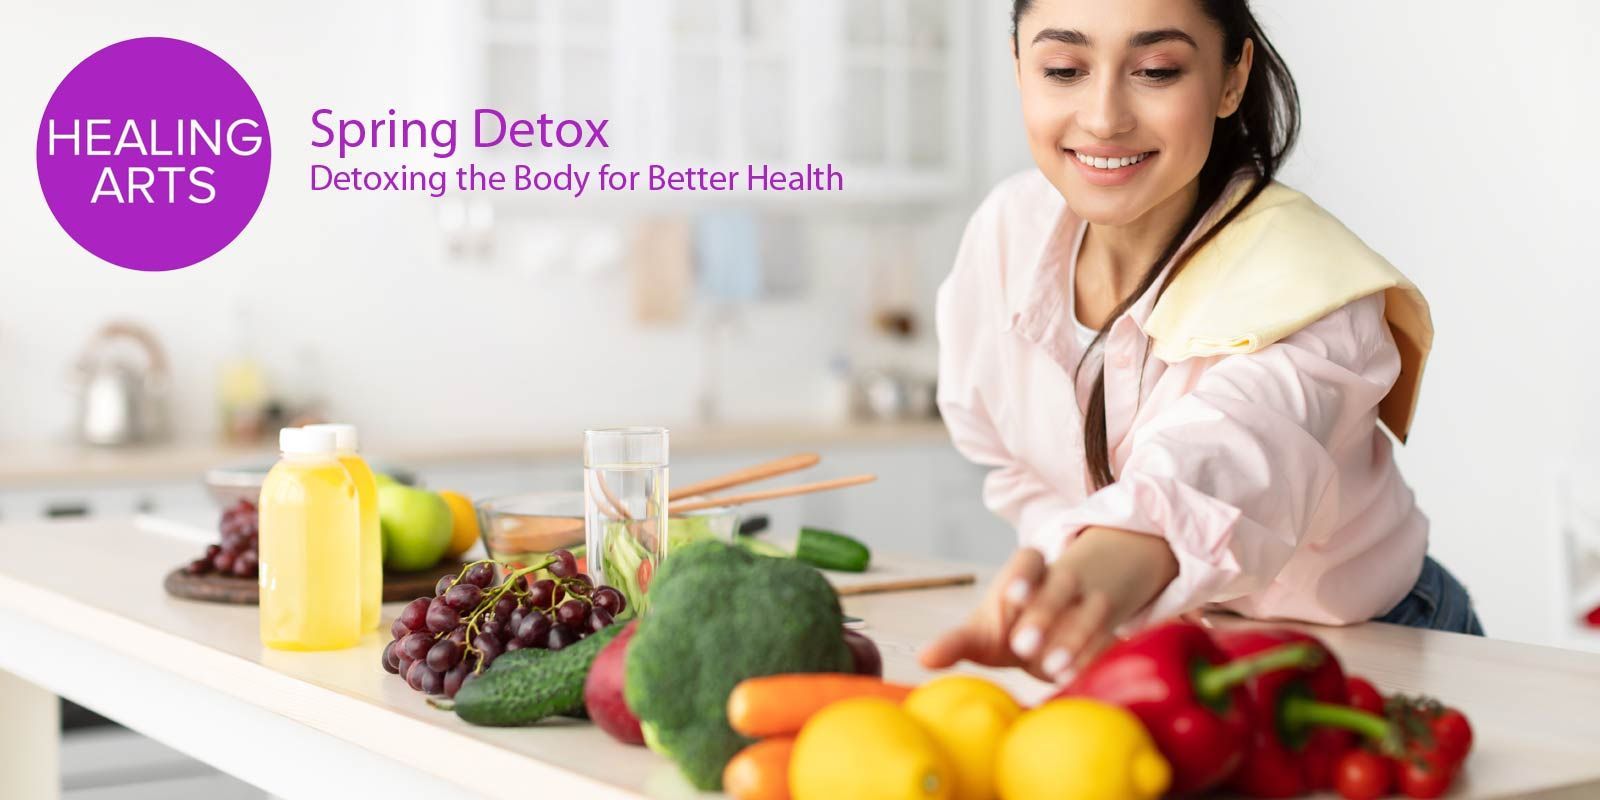 Spring Detox - Detoxing the Body for Better Health